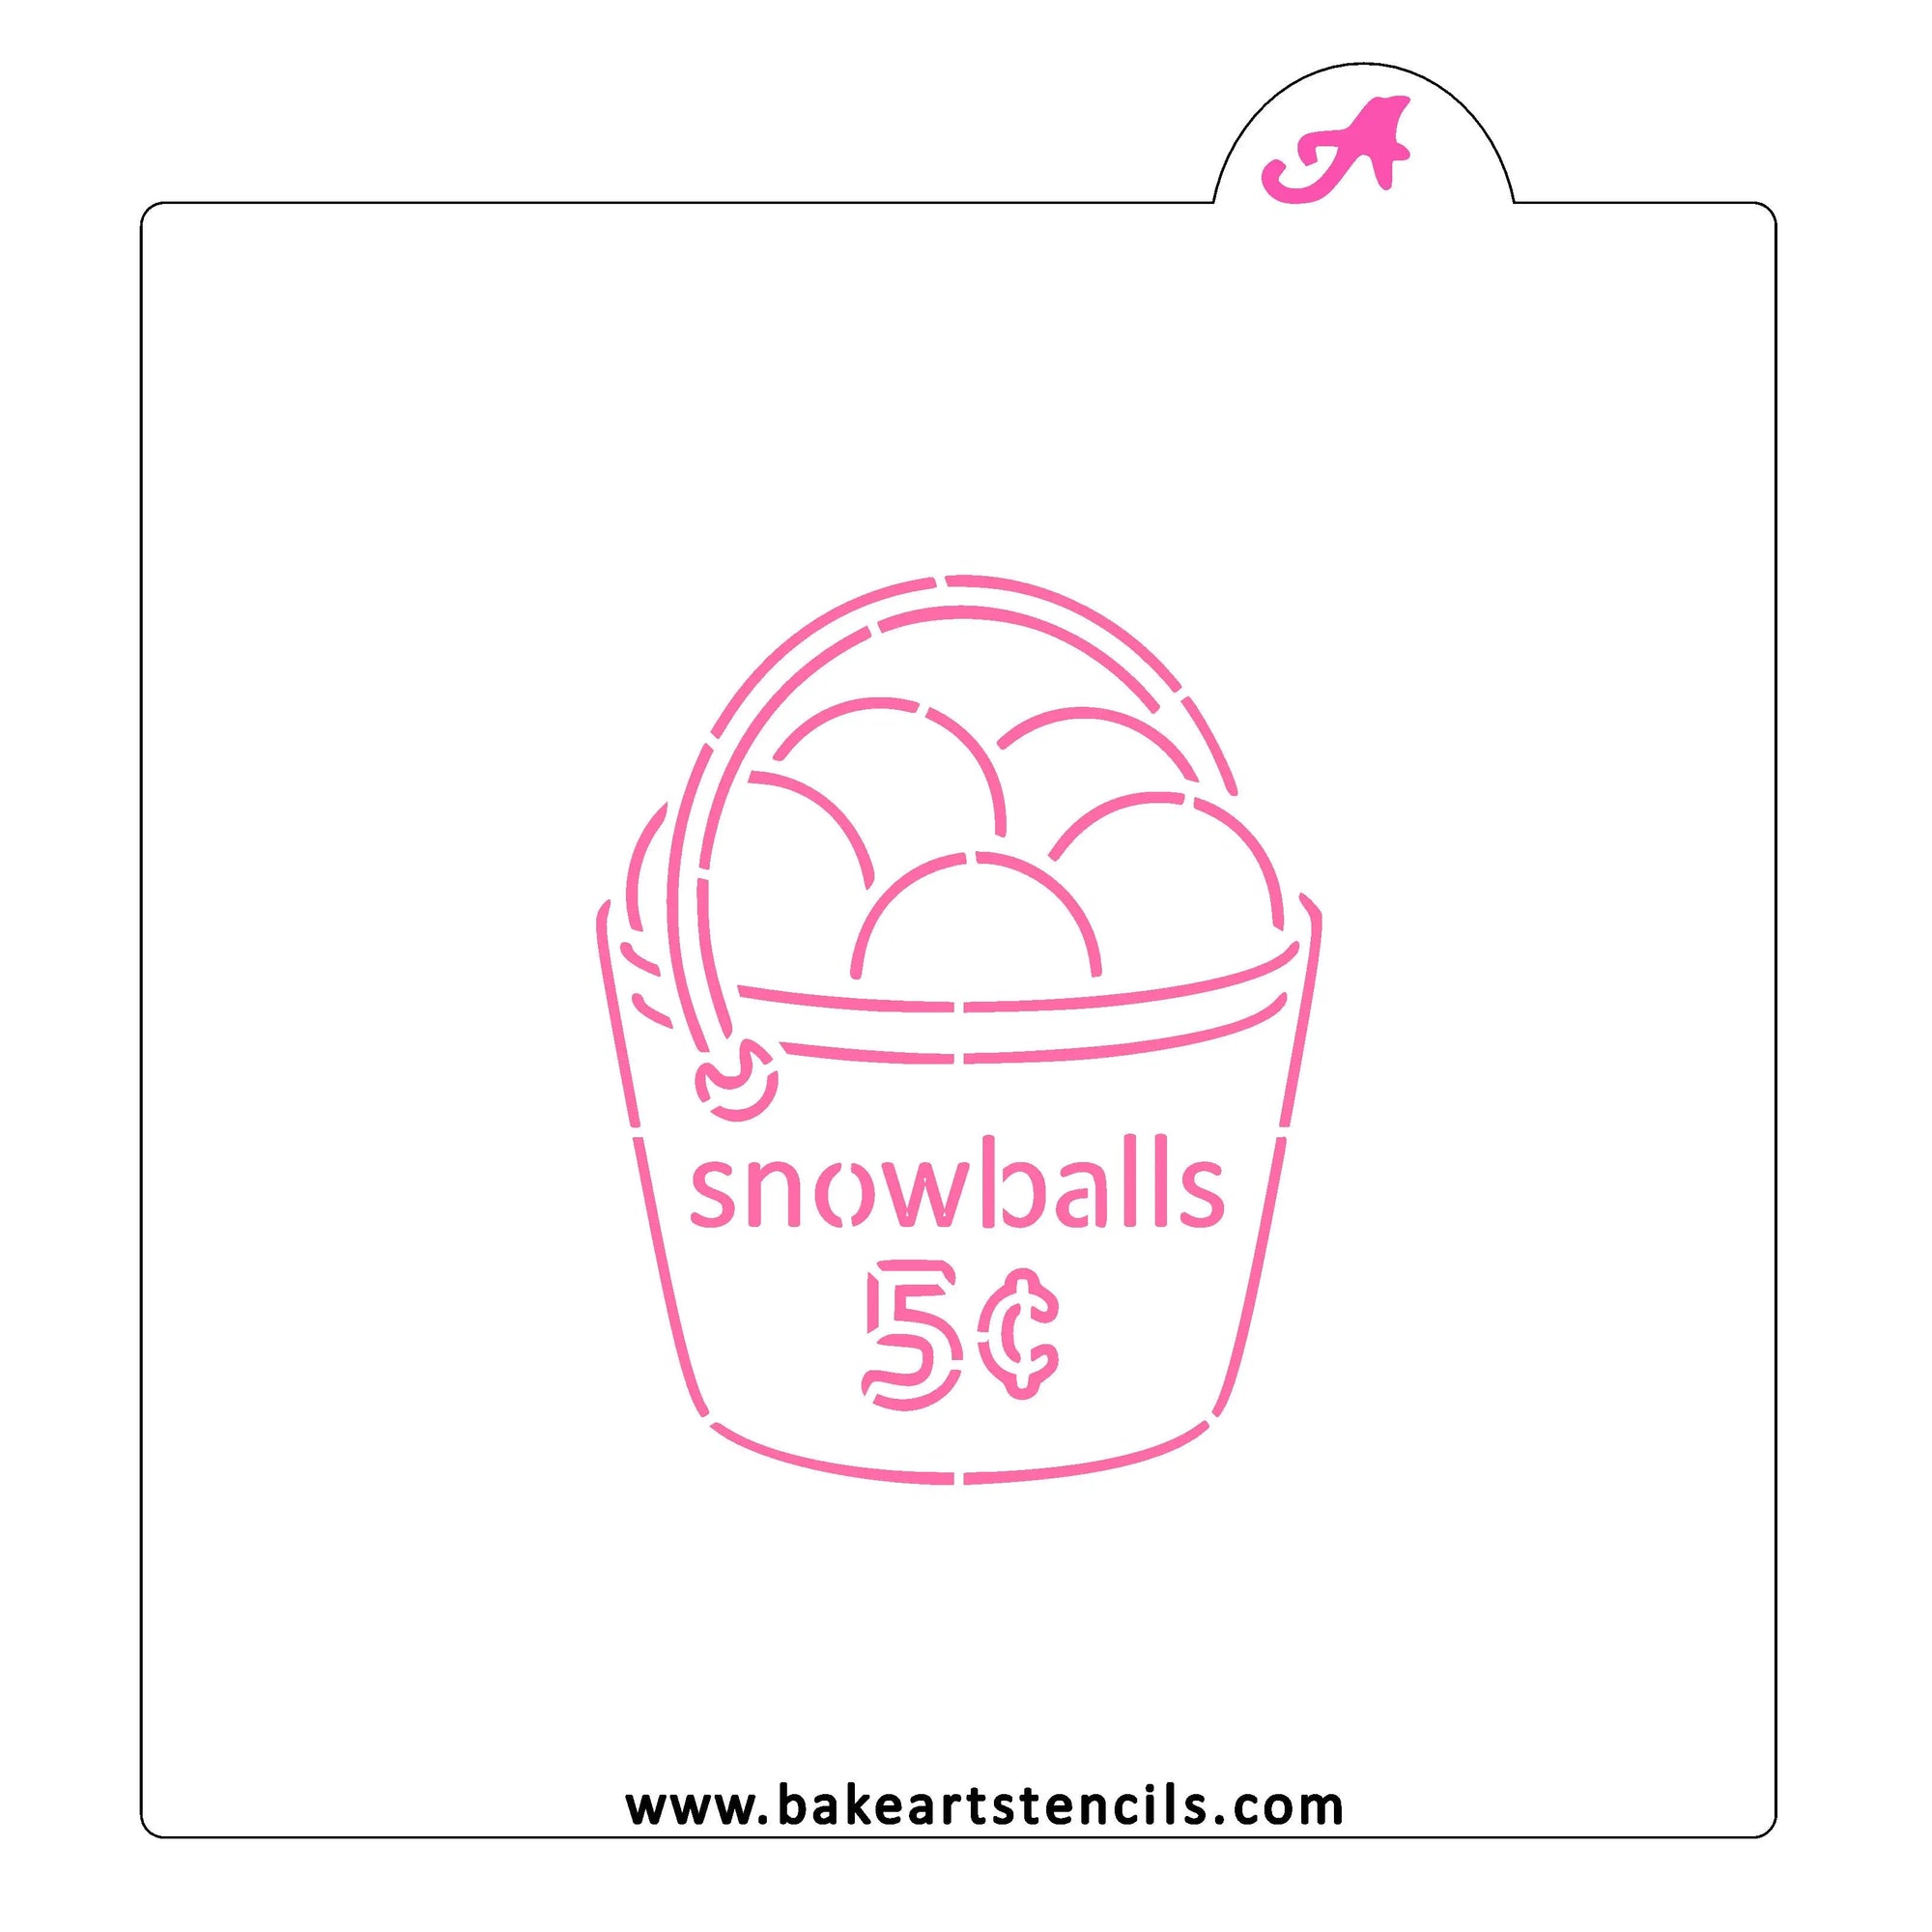 Snowballs PYO bakeartstencil